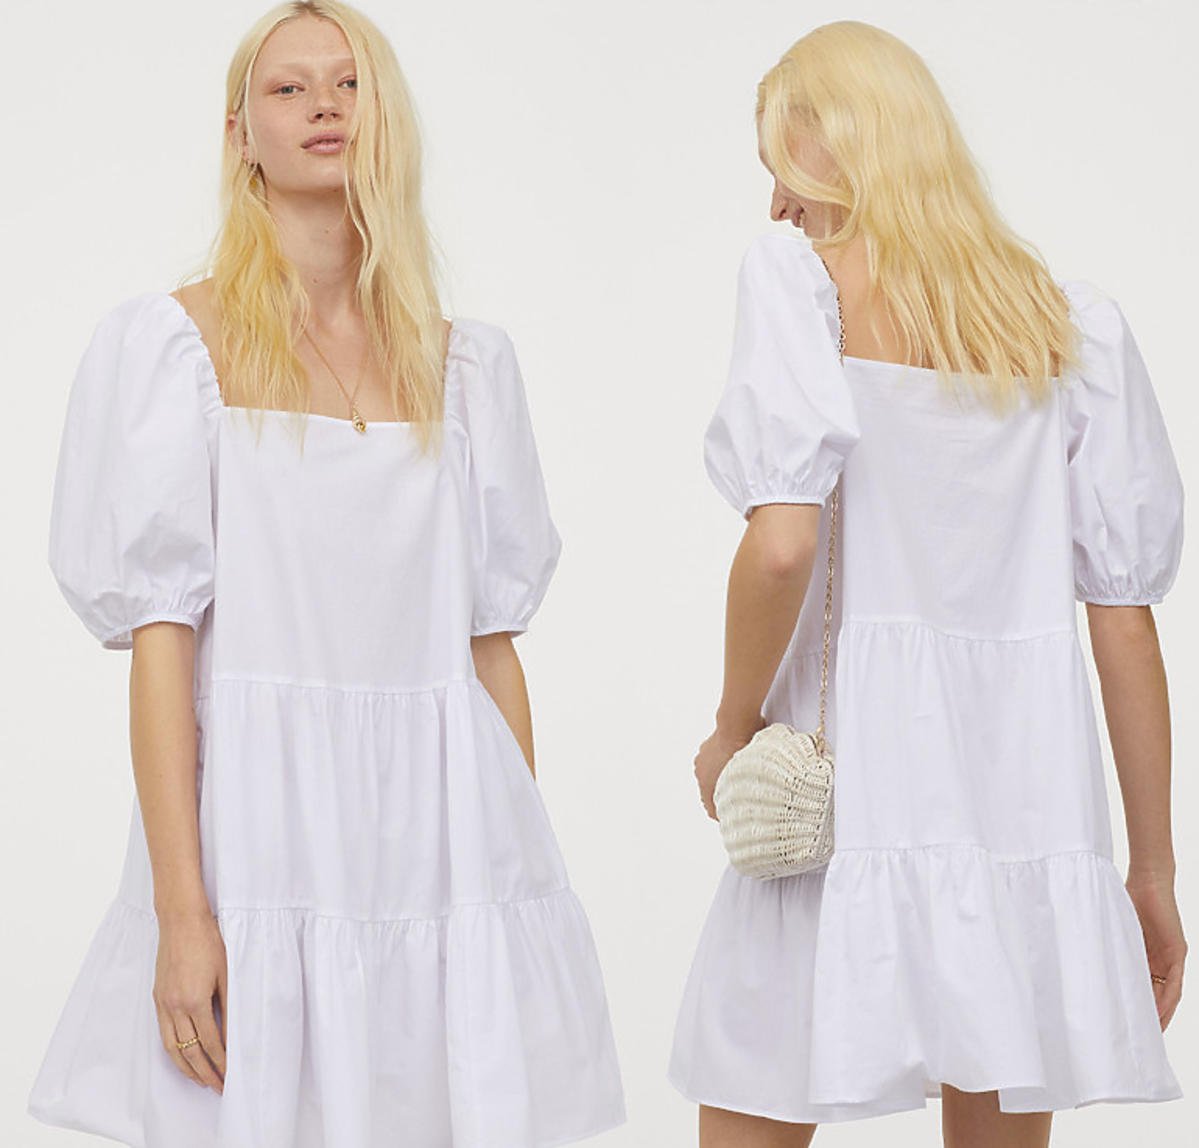 Biała sukienka z bufiastym rękawem z H&M za 99 zł jest hitem Instagrama